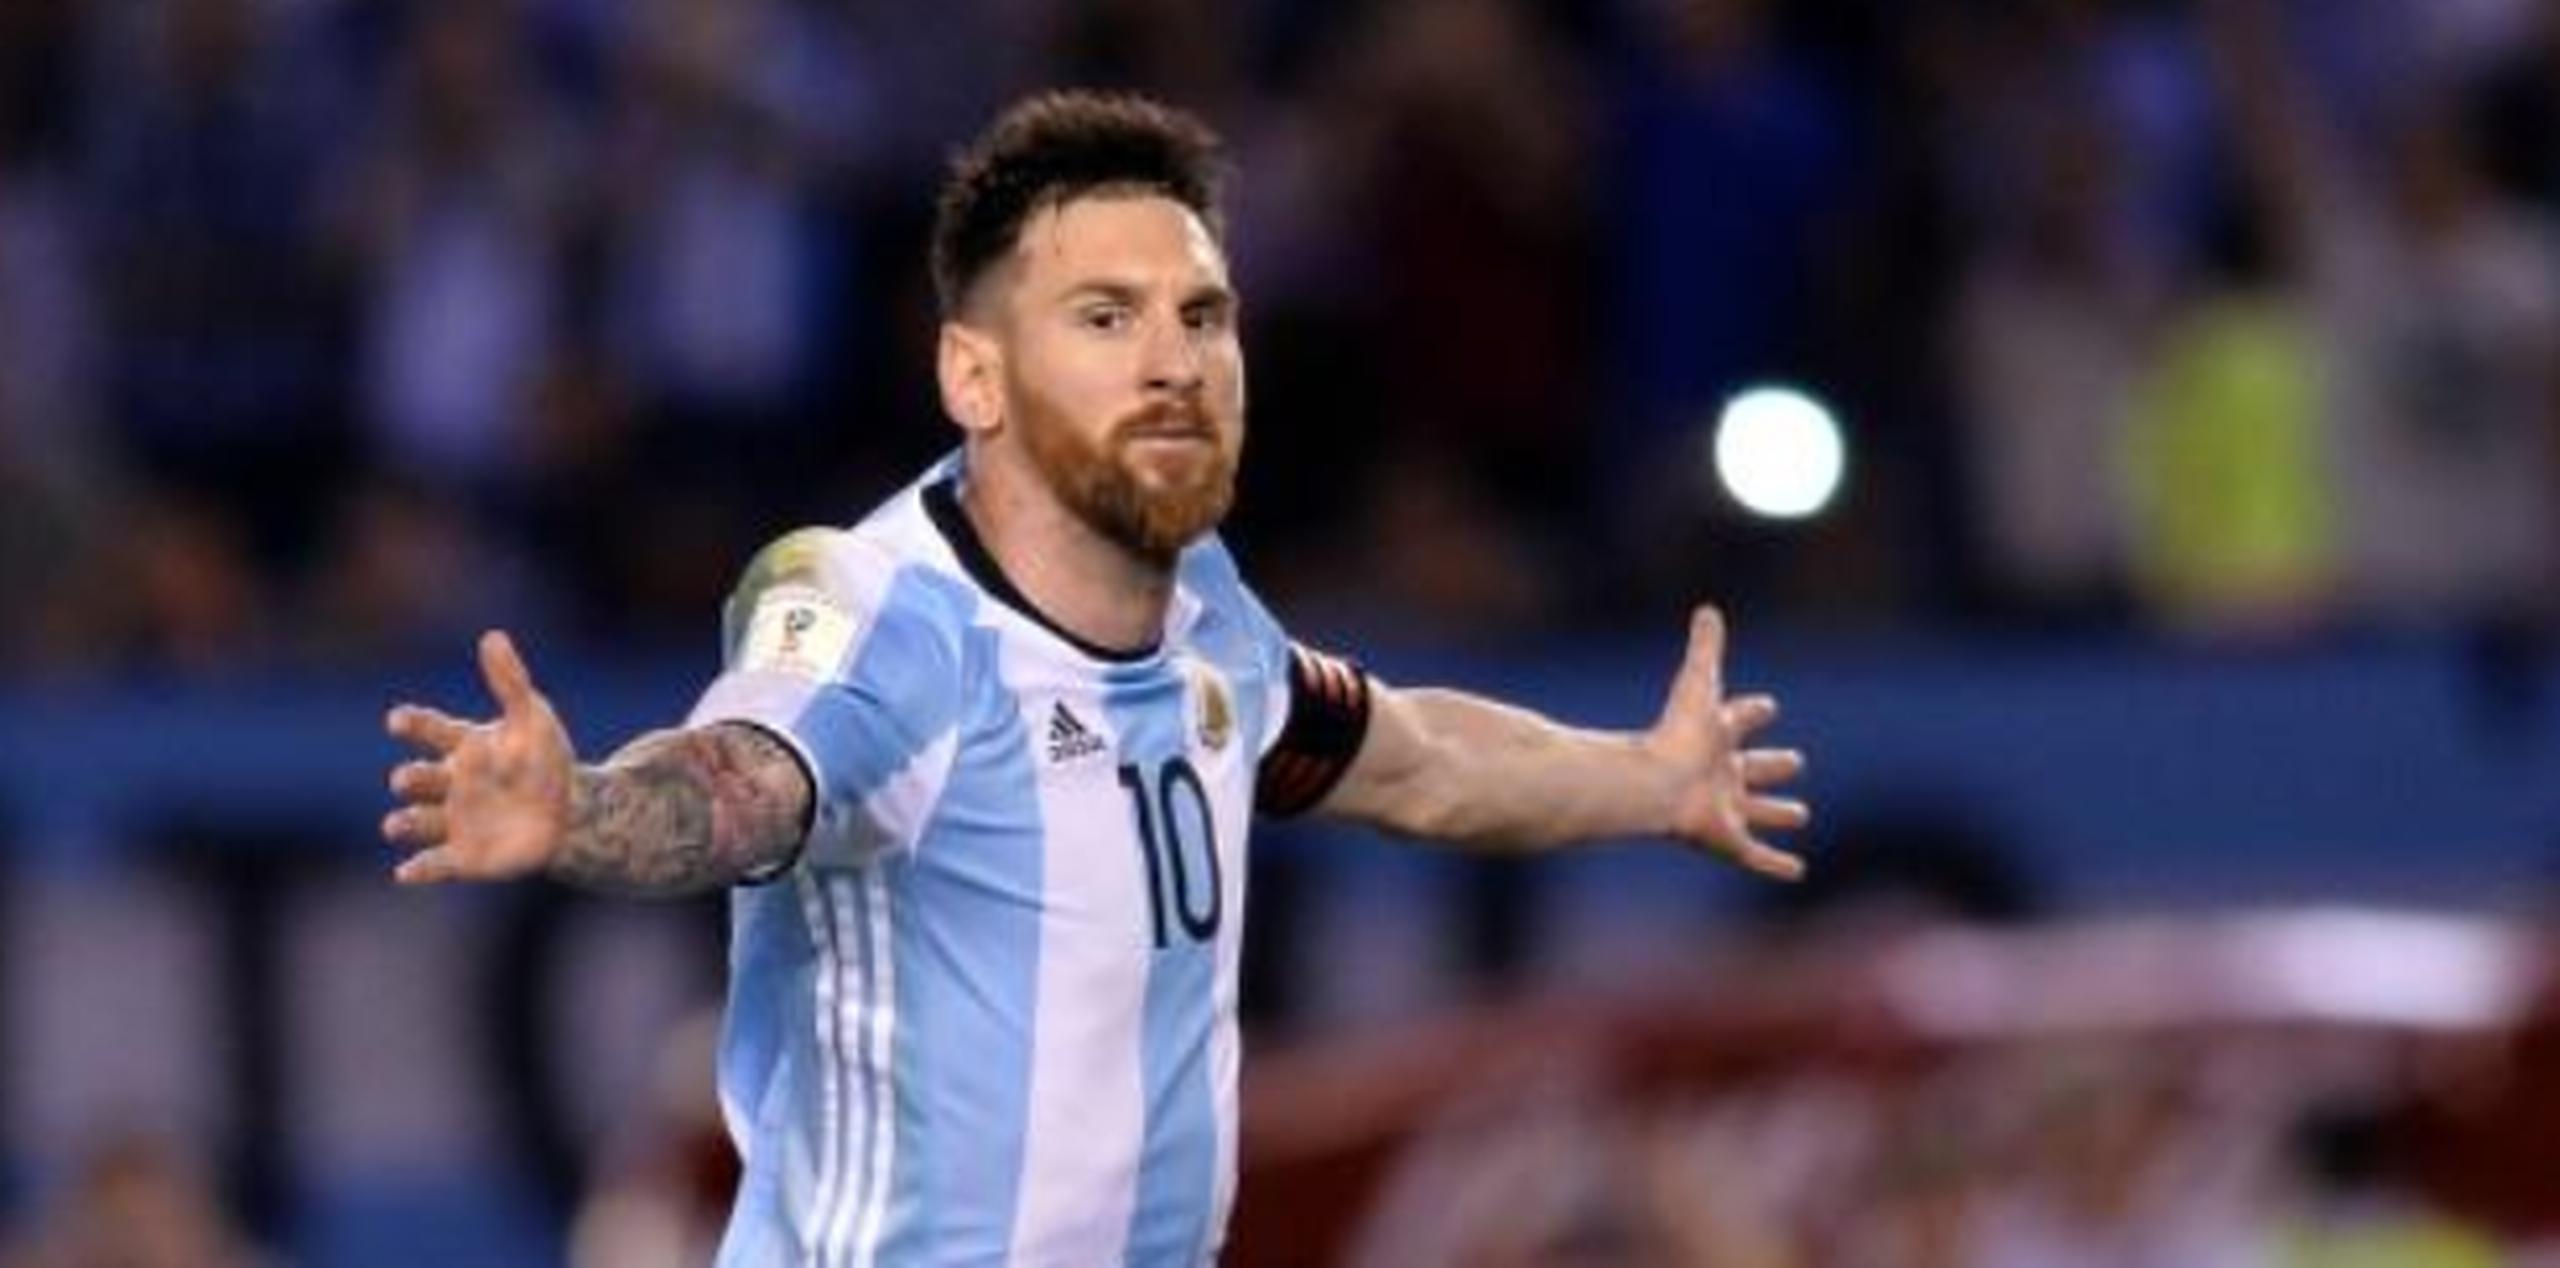 Messi, que cumplió 30 años esta semana, y Roccuzzo pidieron que solo les regalen donaciones para la Fundación Leo Messi. (Archivo)

